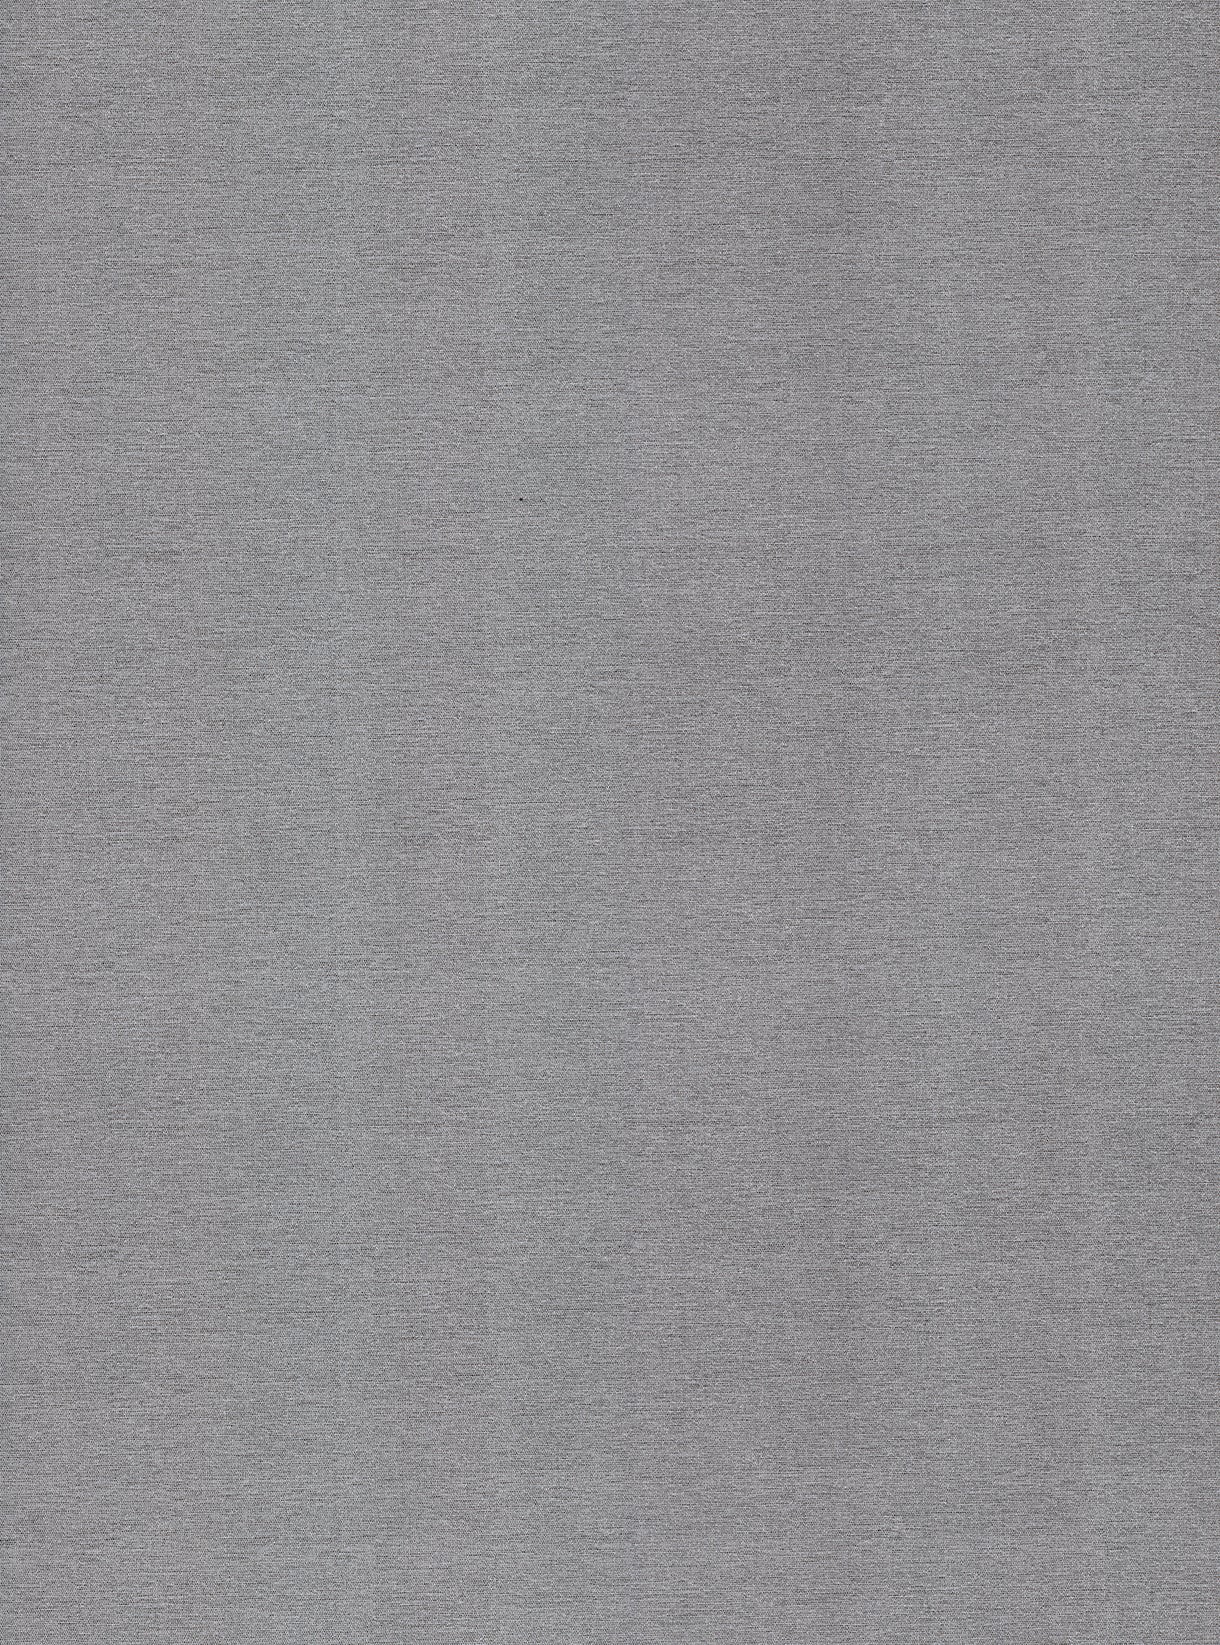 Textile-Metallic Prestige | Stoffdekor Metall Texturiert - Möbelfolie Selbstklebende Tapete Vinyl Folie für Möbel Wand Regal (100x122cm)